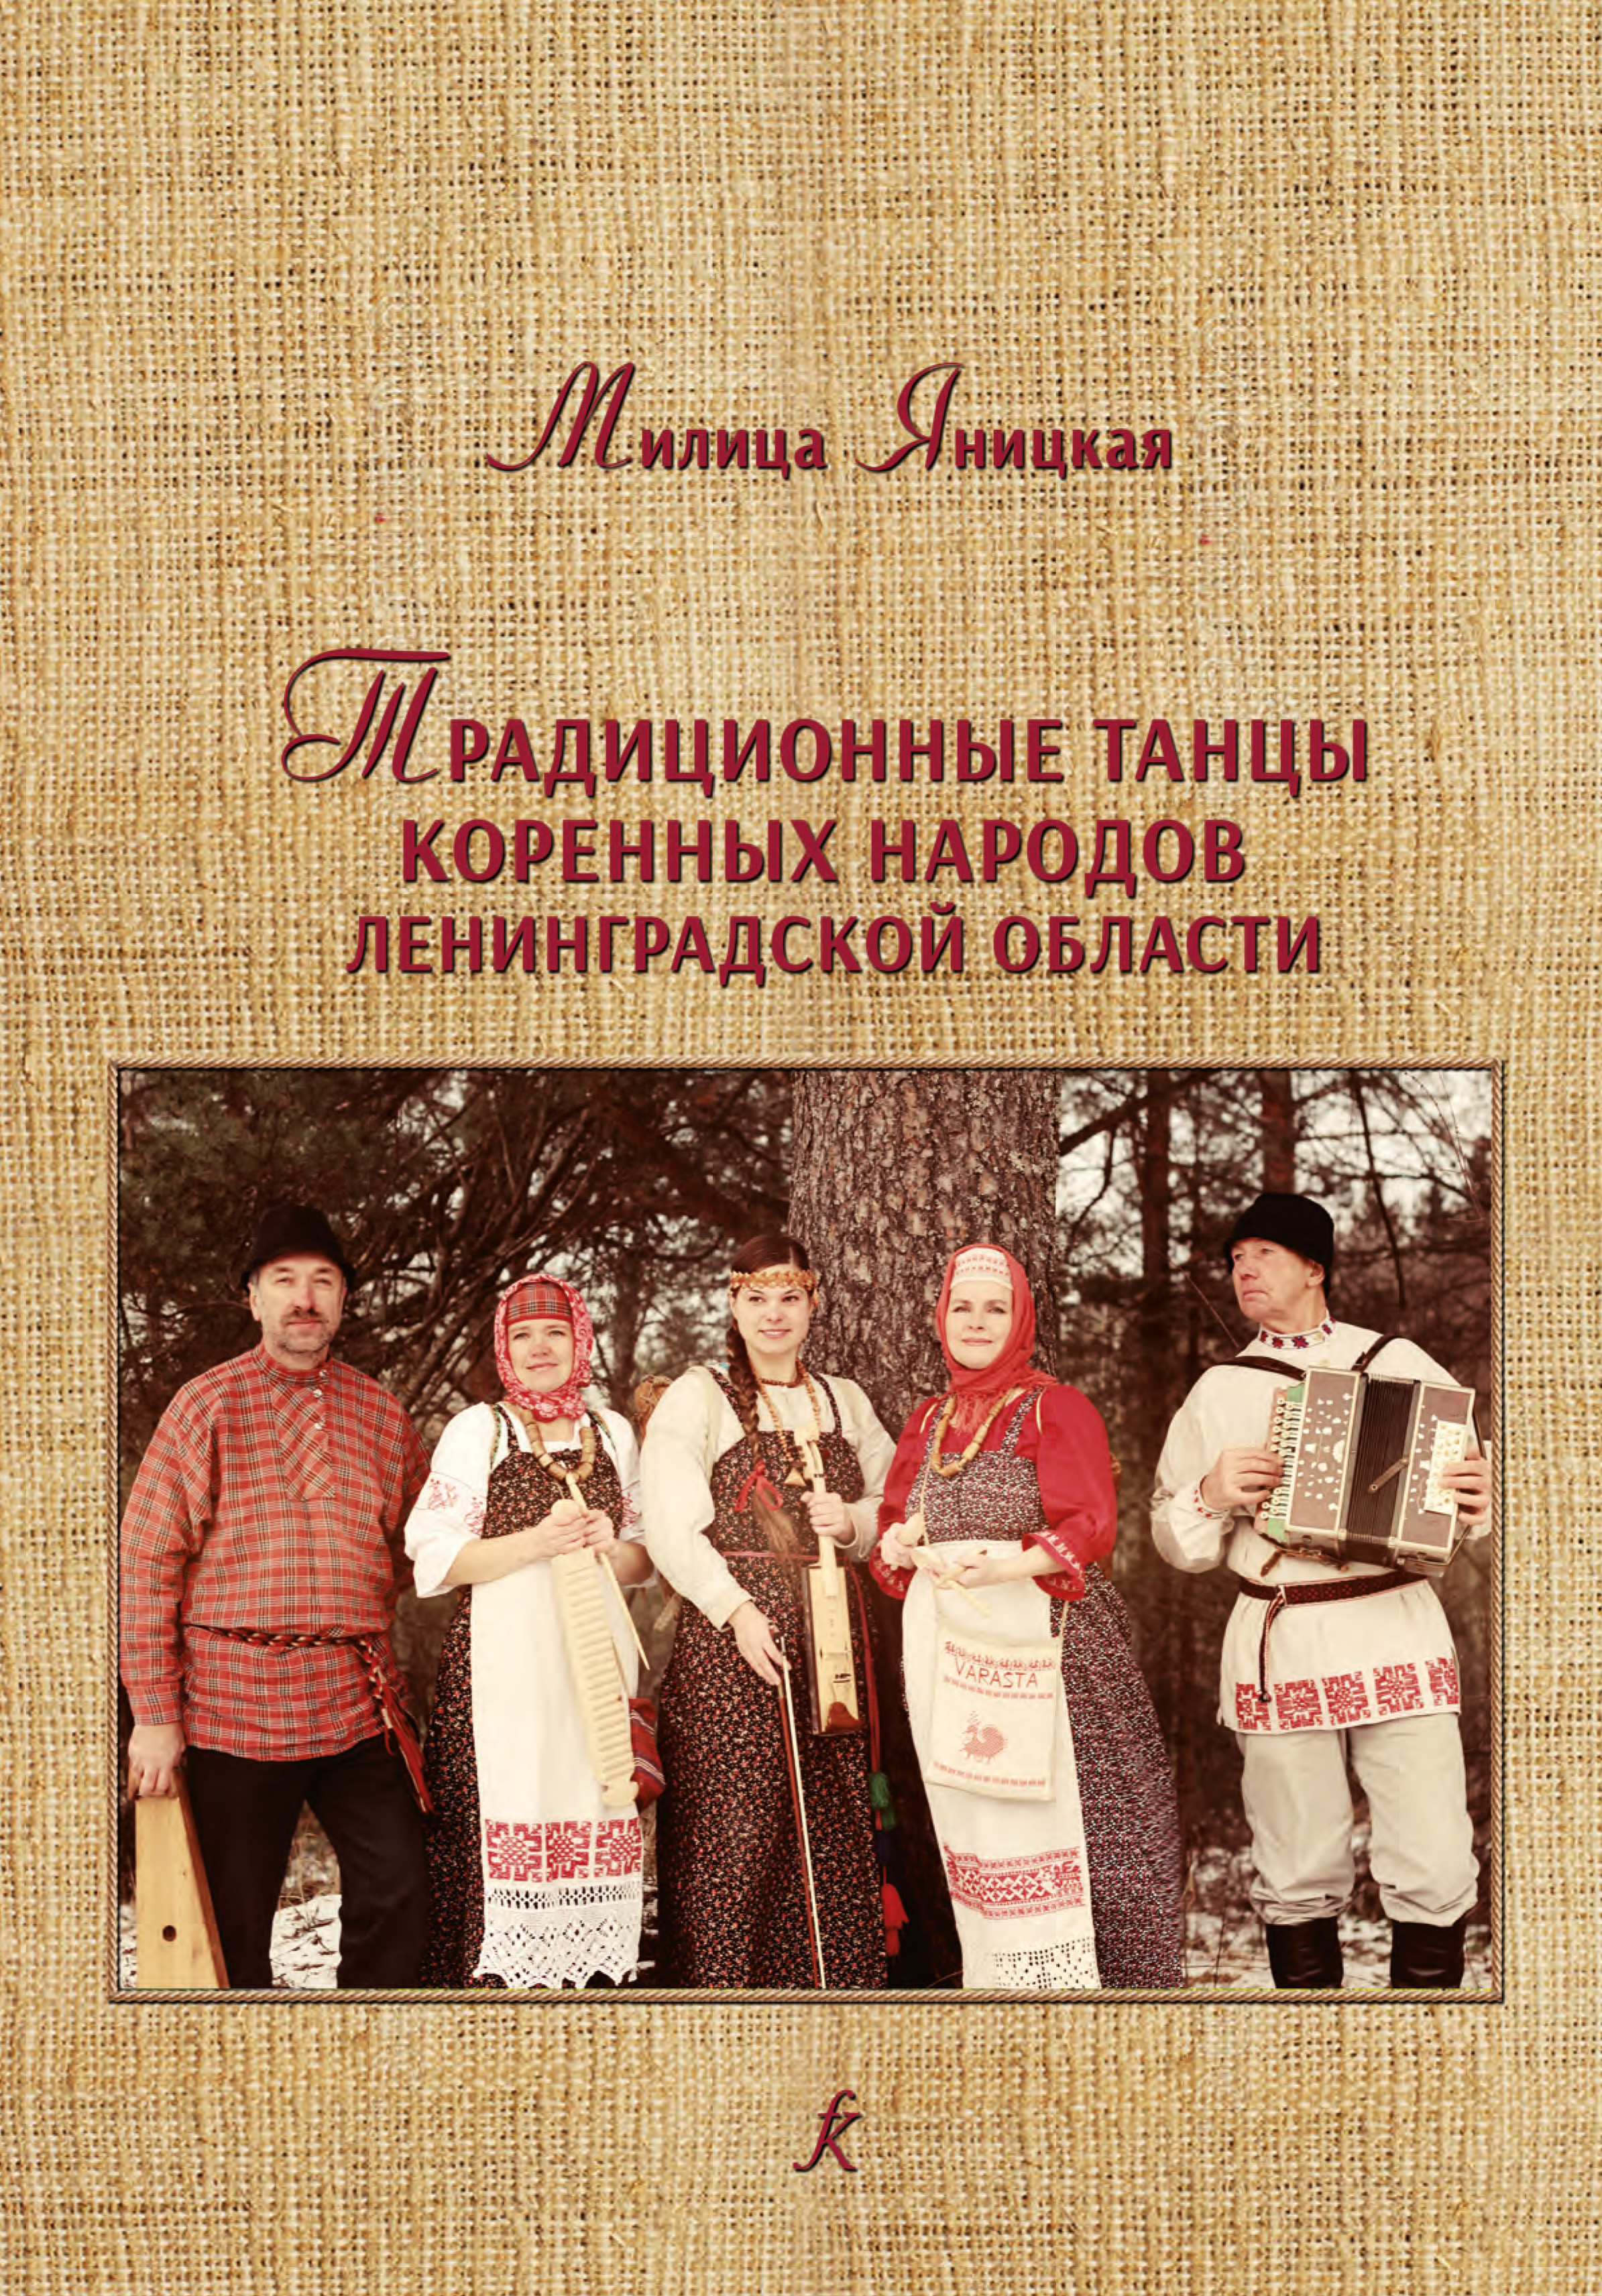 Традиционные танцы коренных народов Ленинградской области